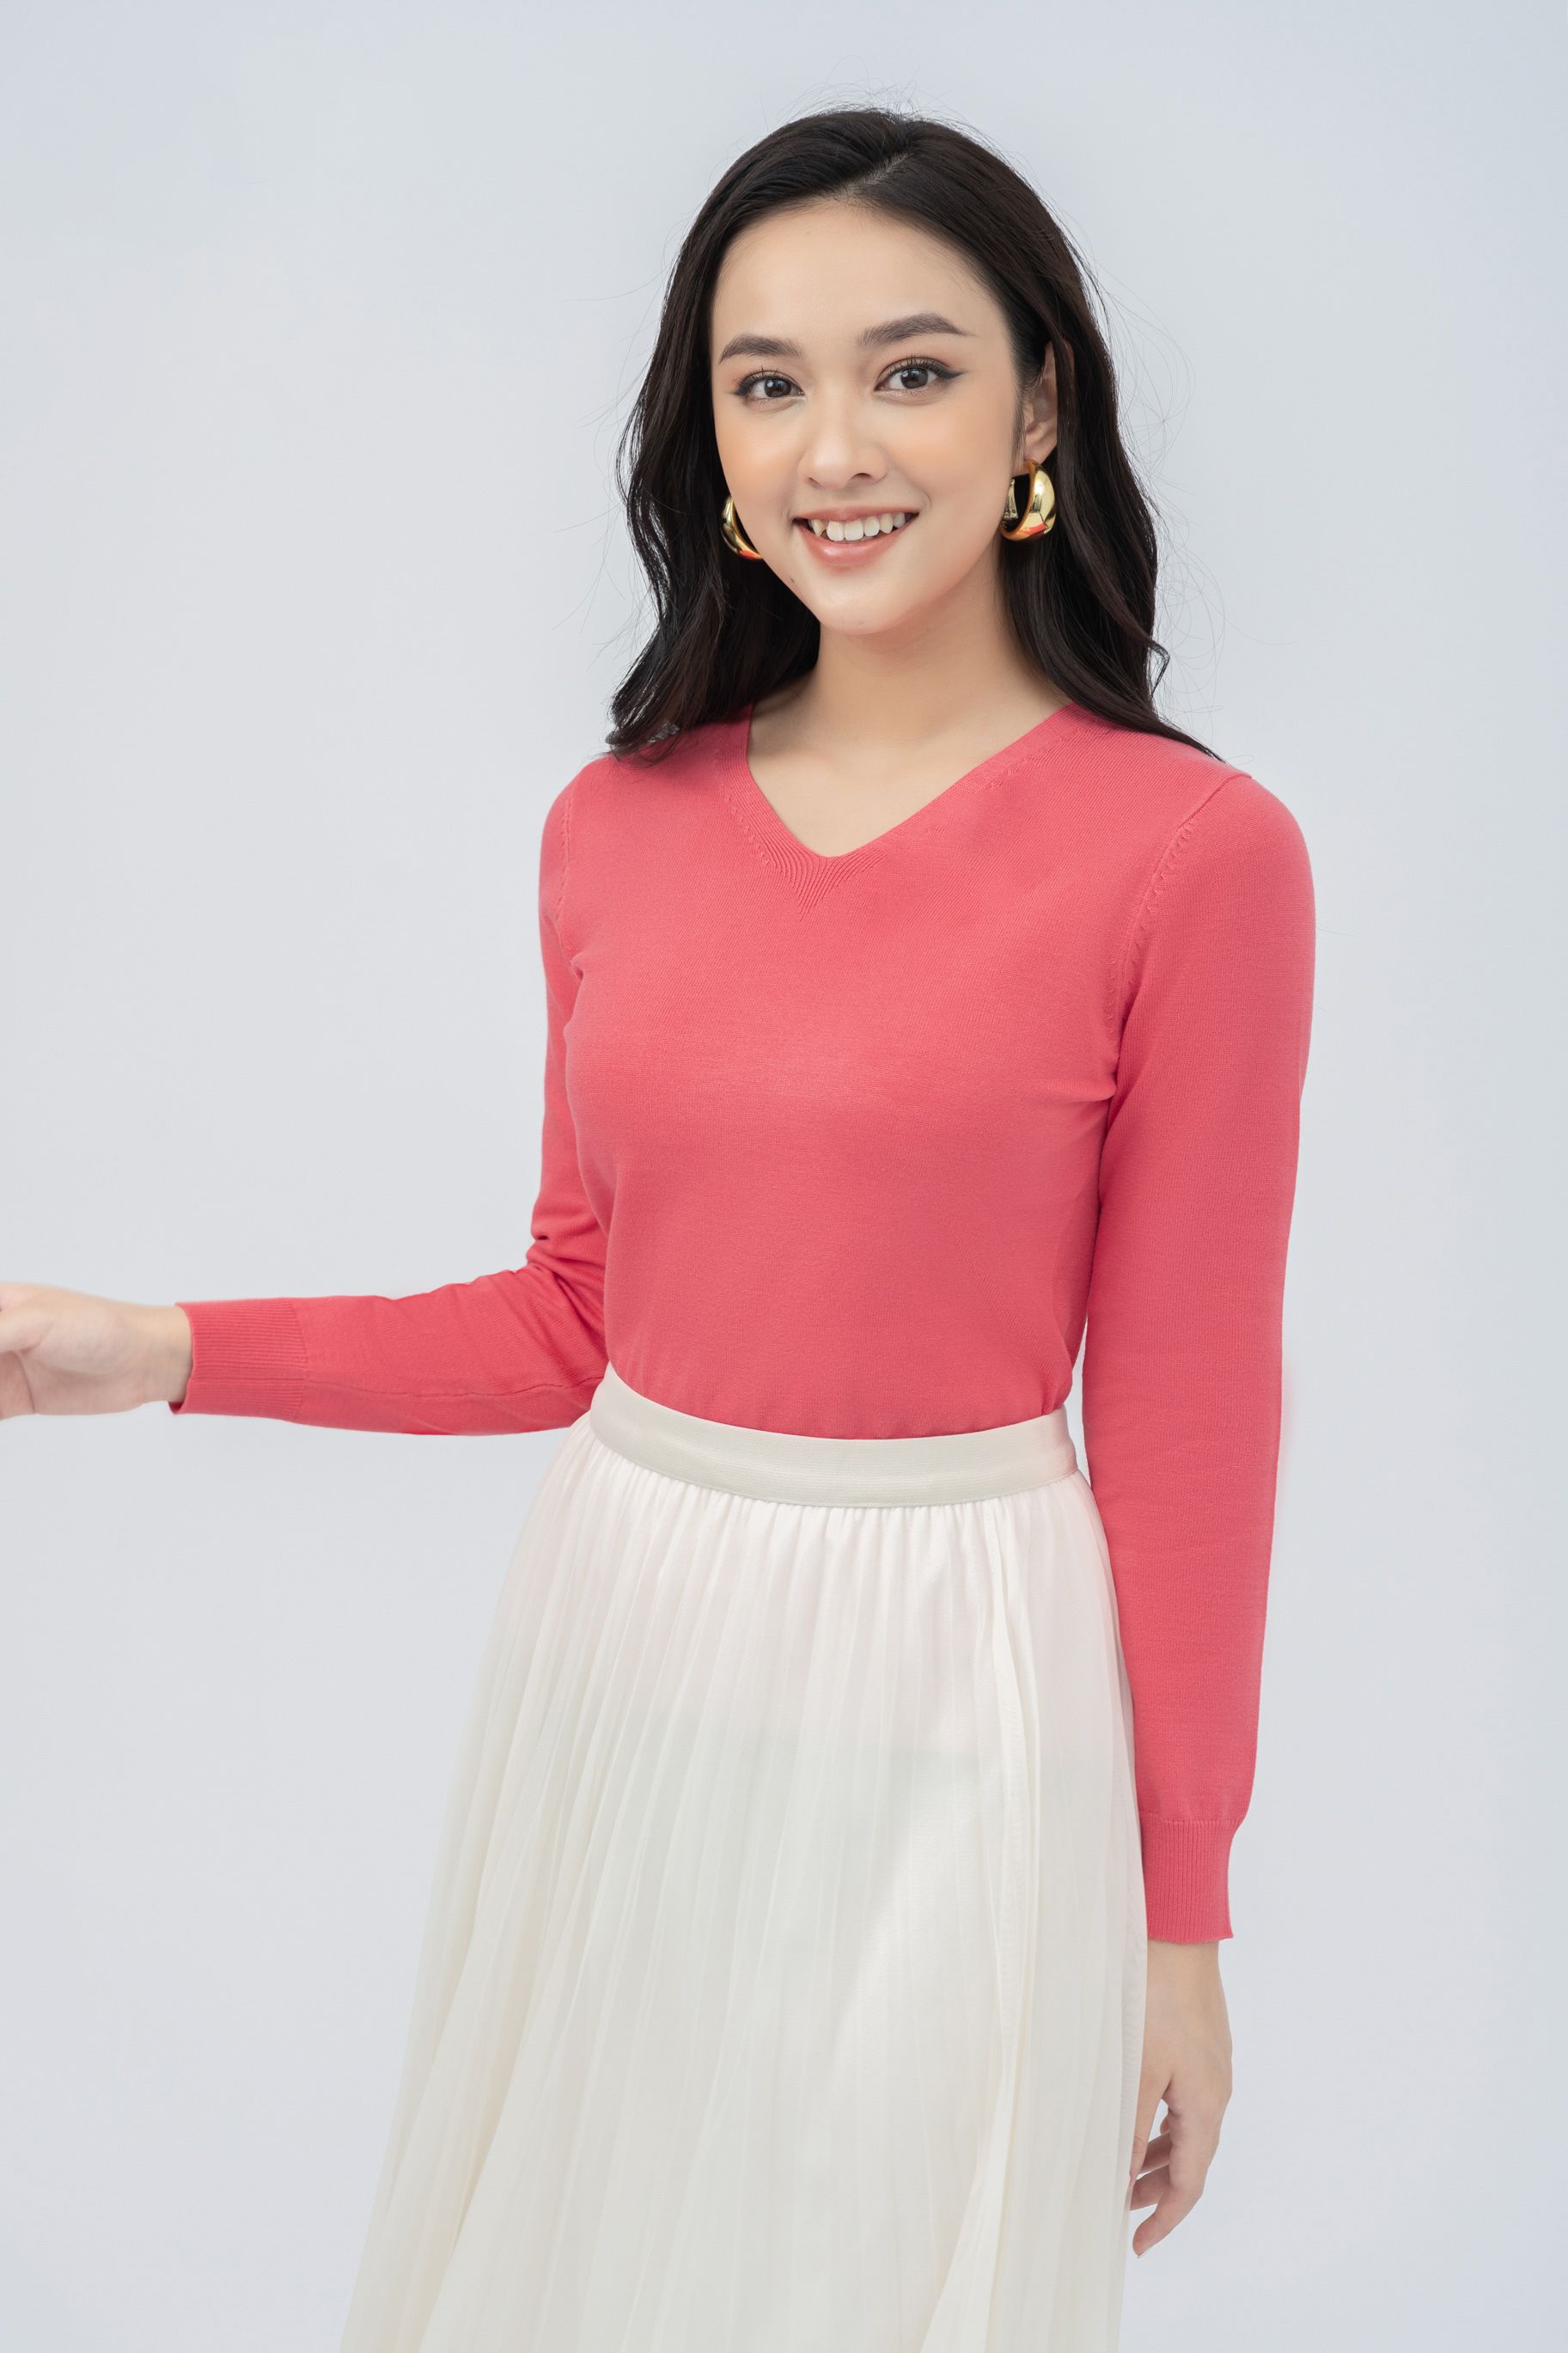 BB Store] Váy len tăm cổ tim dáng dài 3 mầu hàng đẹp | Shopee Việt Nam